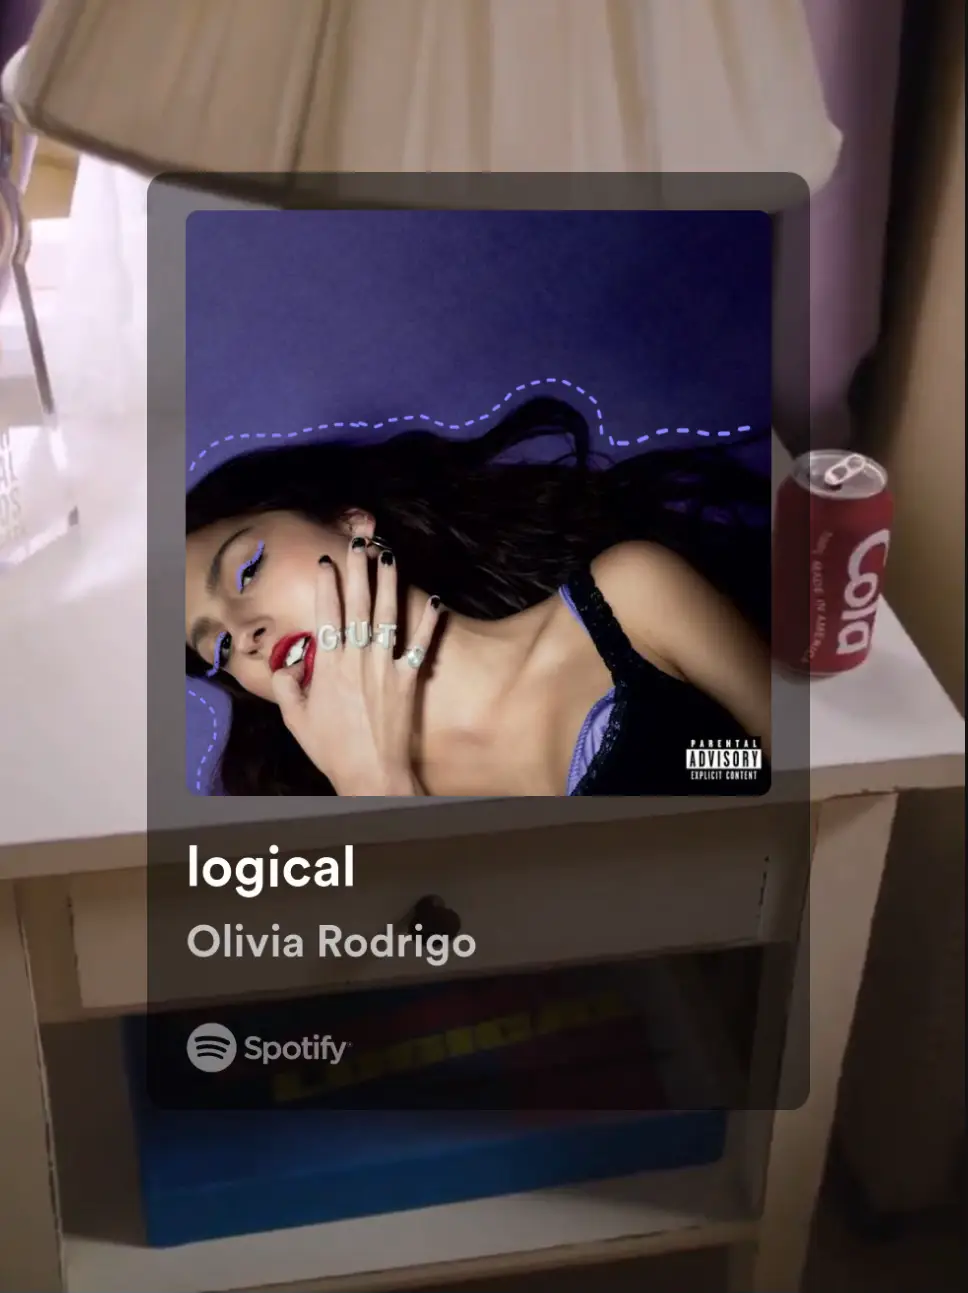  A Spotify ad for Olivia Rodrigo.